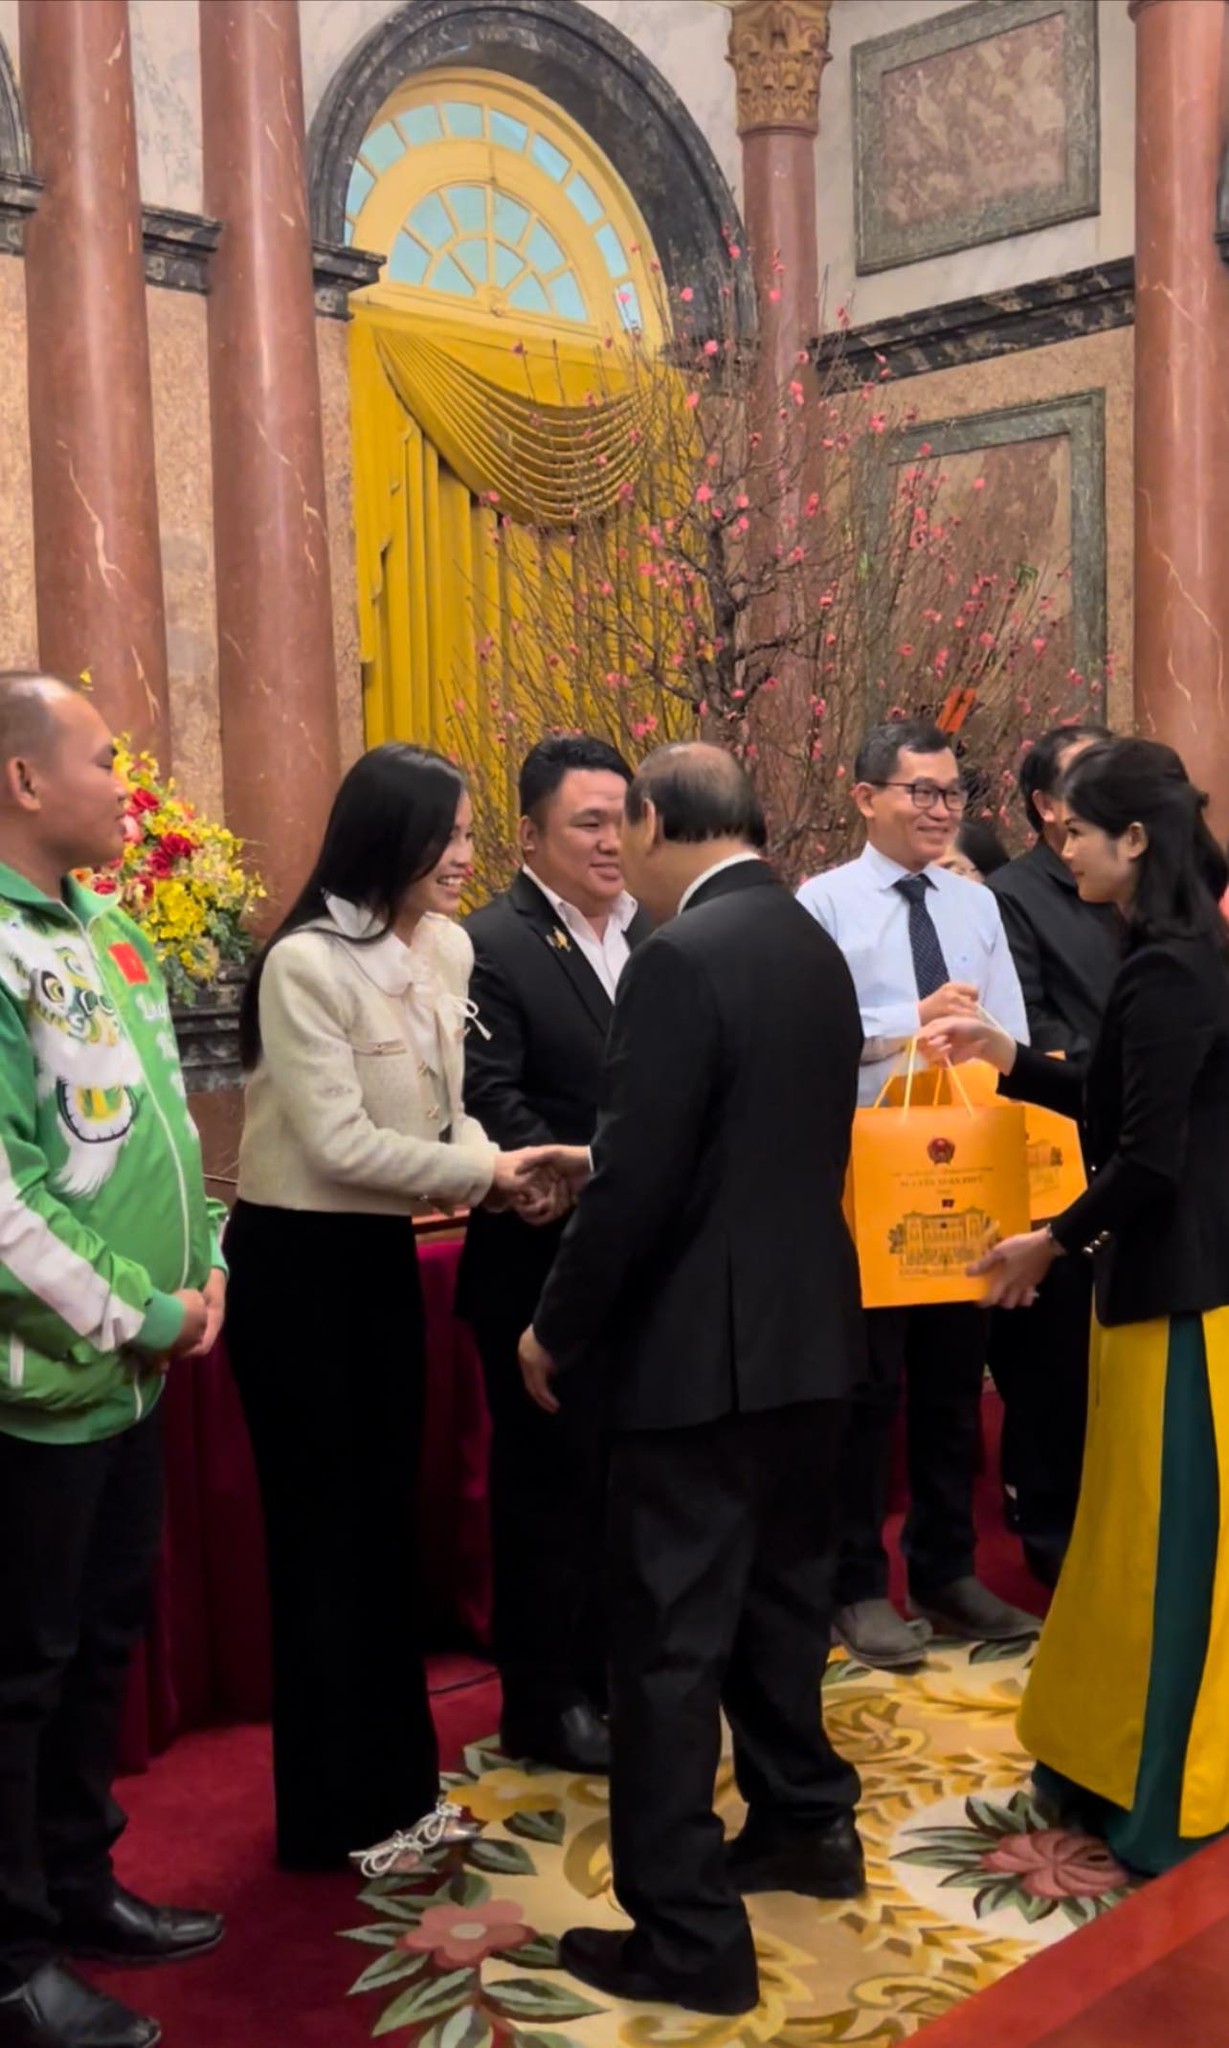 'Cô tiên từ thiện' Trúc Phương tự hào khi được gặp gỡ, trò chuyện cùng Chủ tịch nước Nguyễn Xuân Phúc.